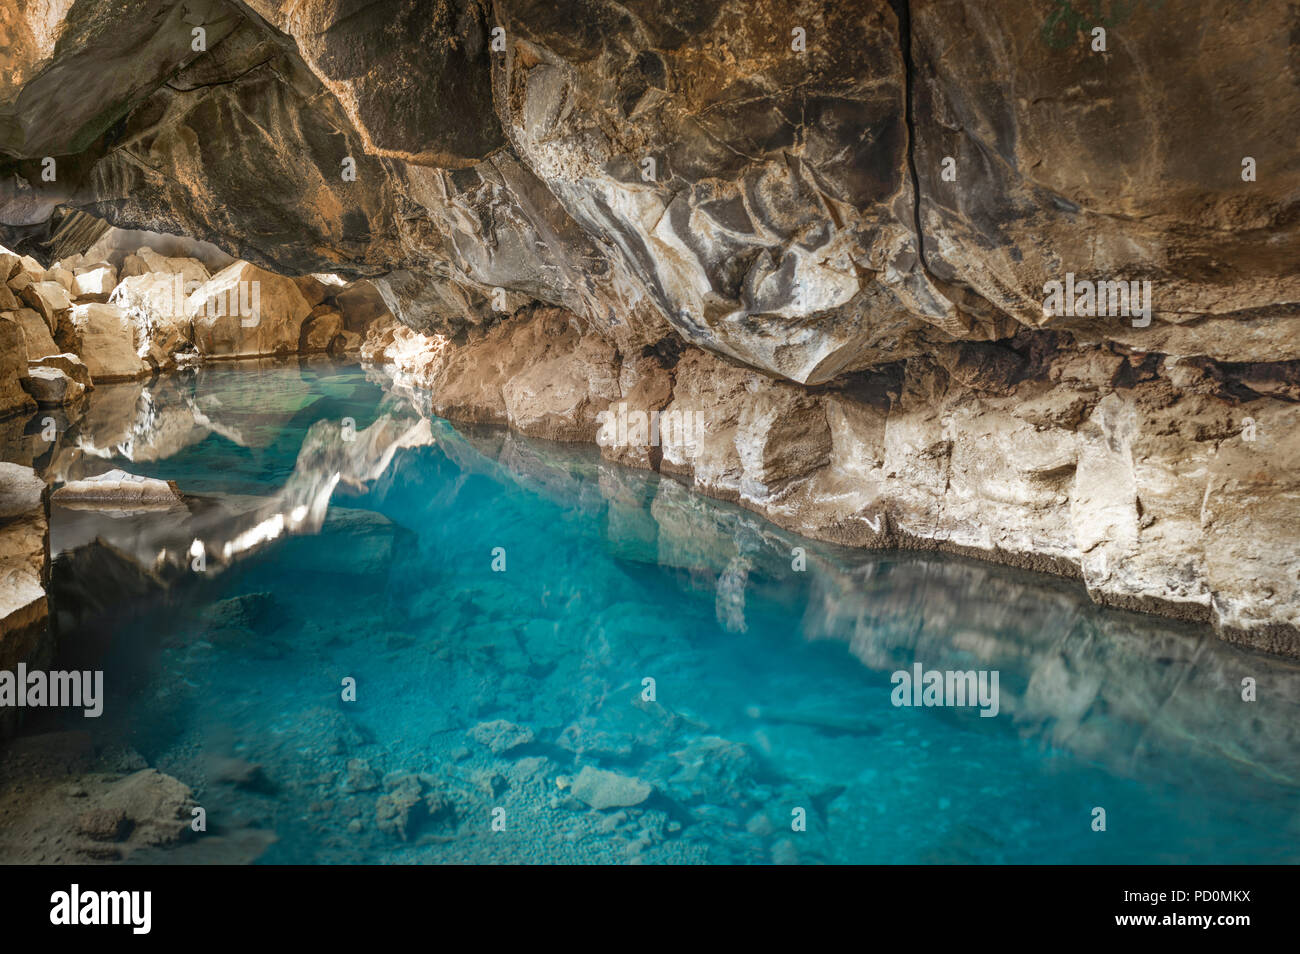 Grjotagja géothermique grotte de lave près du lac Myvatn en Islande Banque D'Images